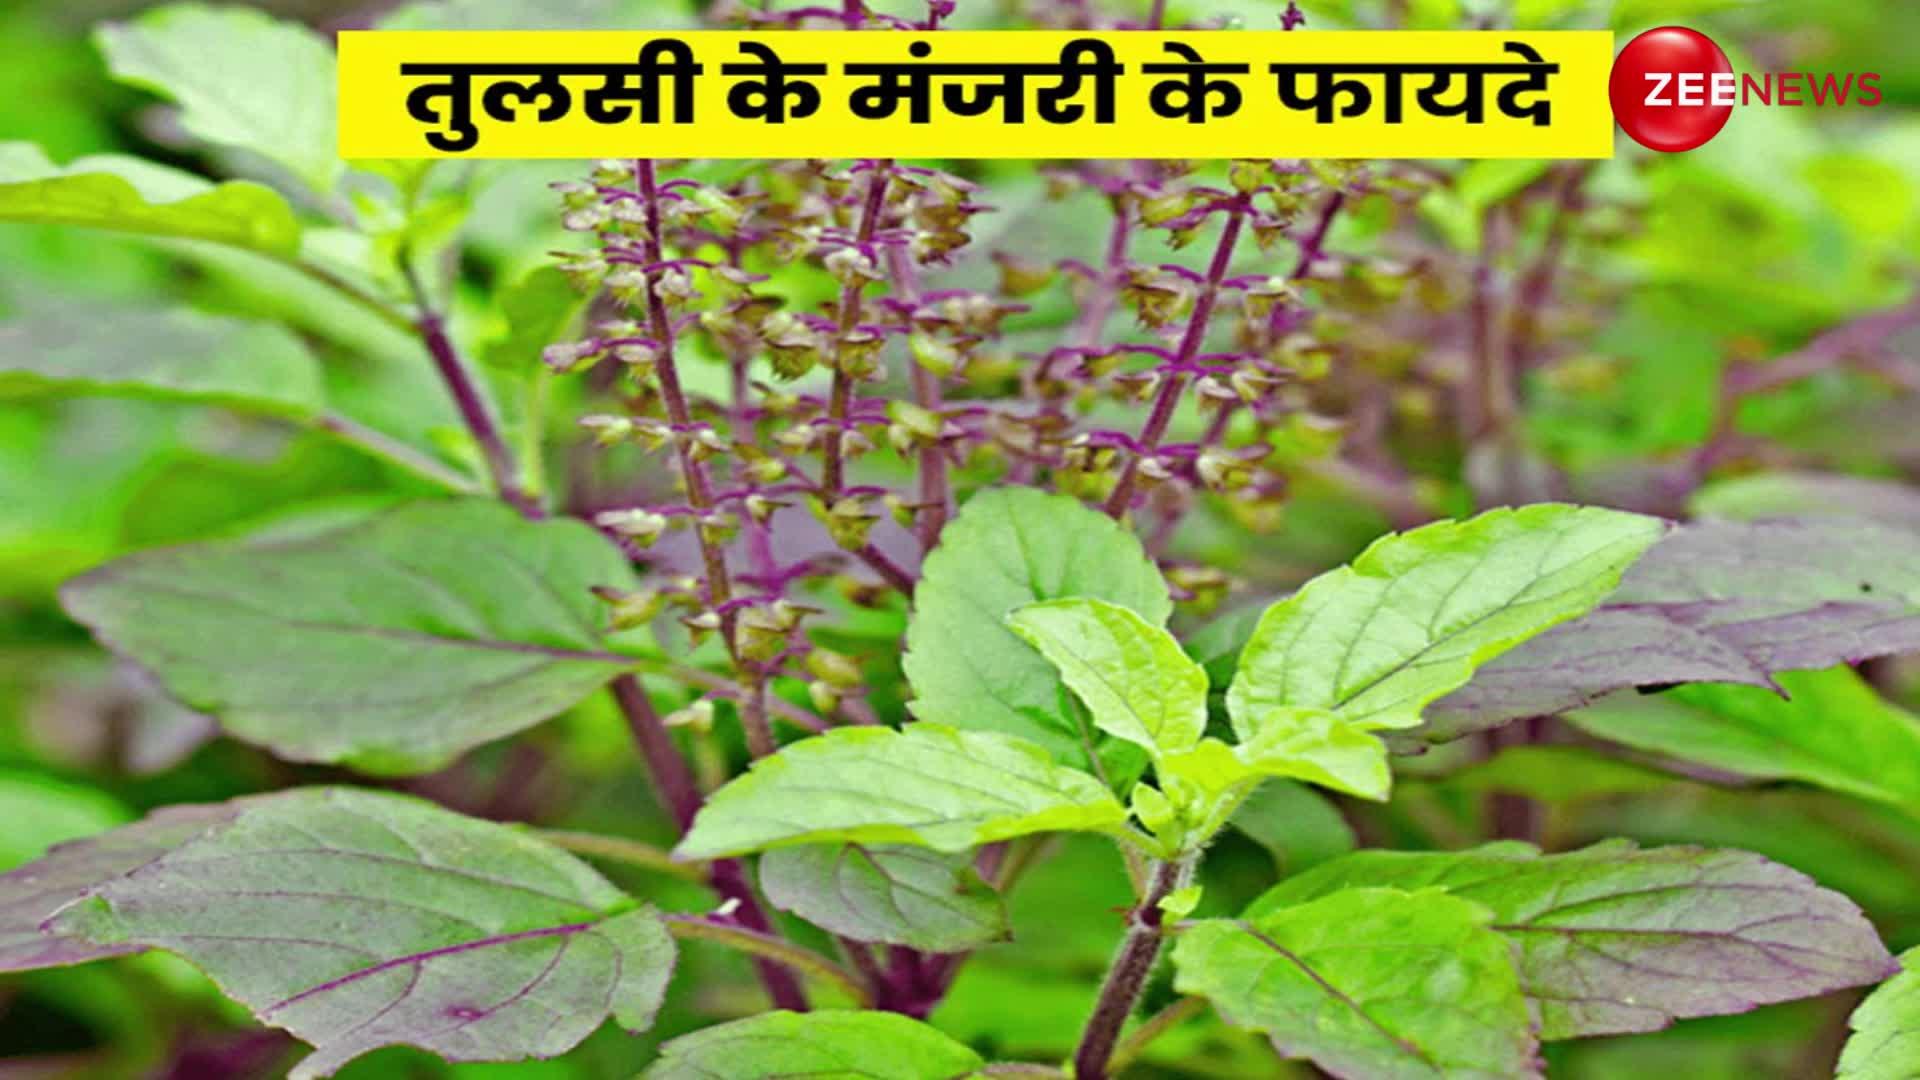 Tulsi Upay: तुलसी के पौधे में अगर मंजरी निकल आएं तो तुरंत कर लें ये काम